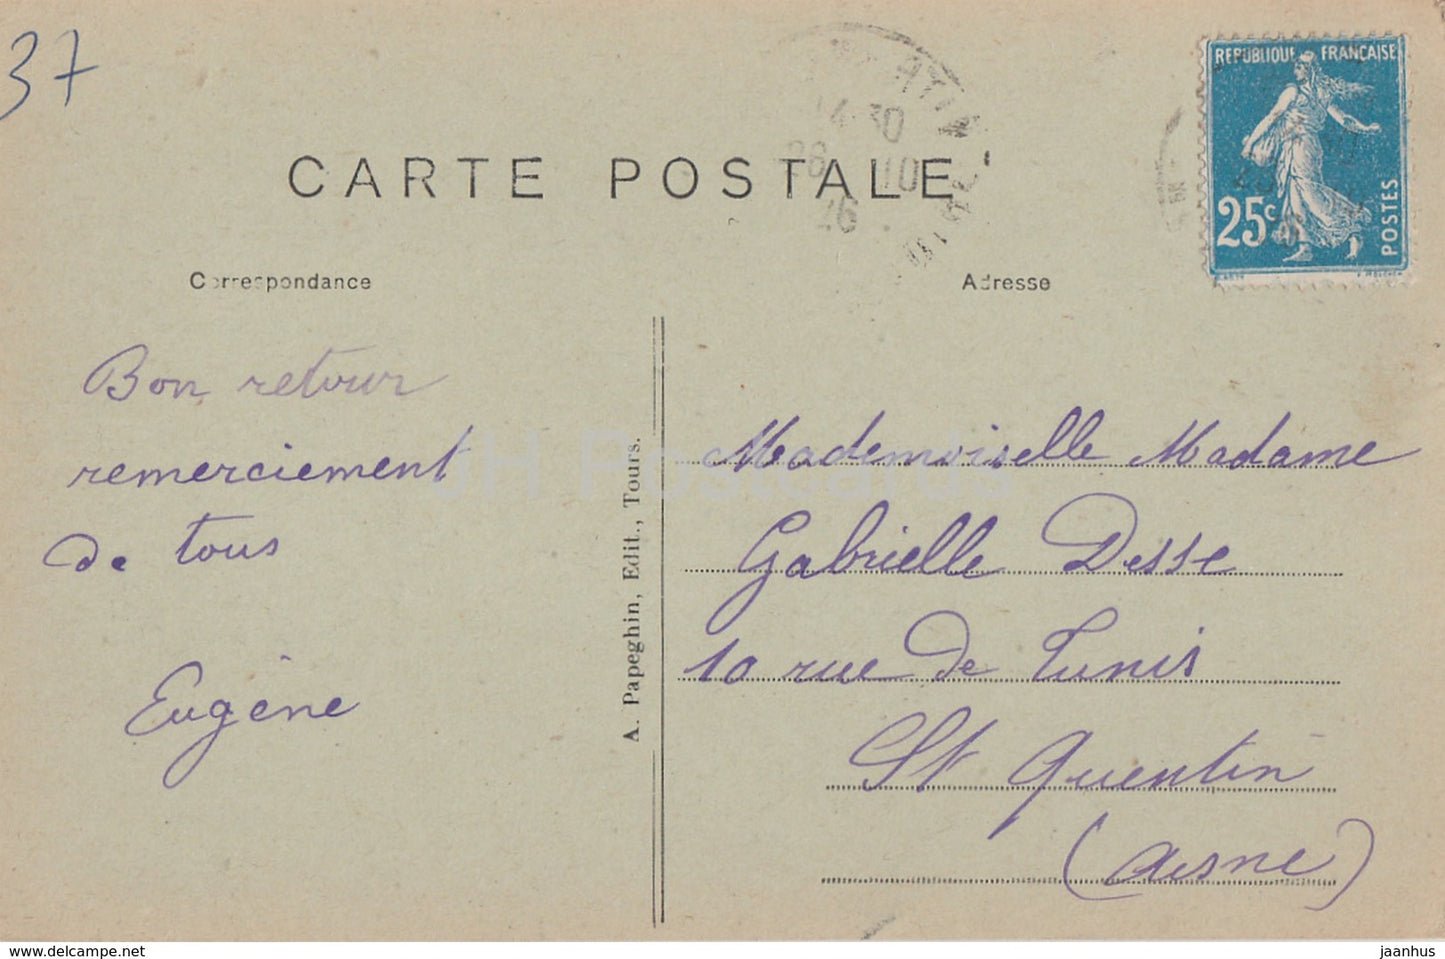 Environs de Tours - St Avertin - Chateau de Grandmont - Cote Nord - castle - 284 - old postcard - 1926 - France - used